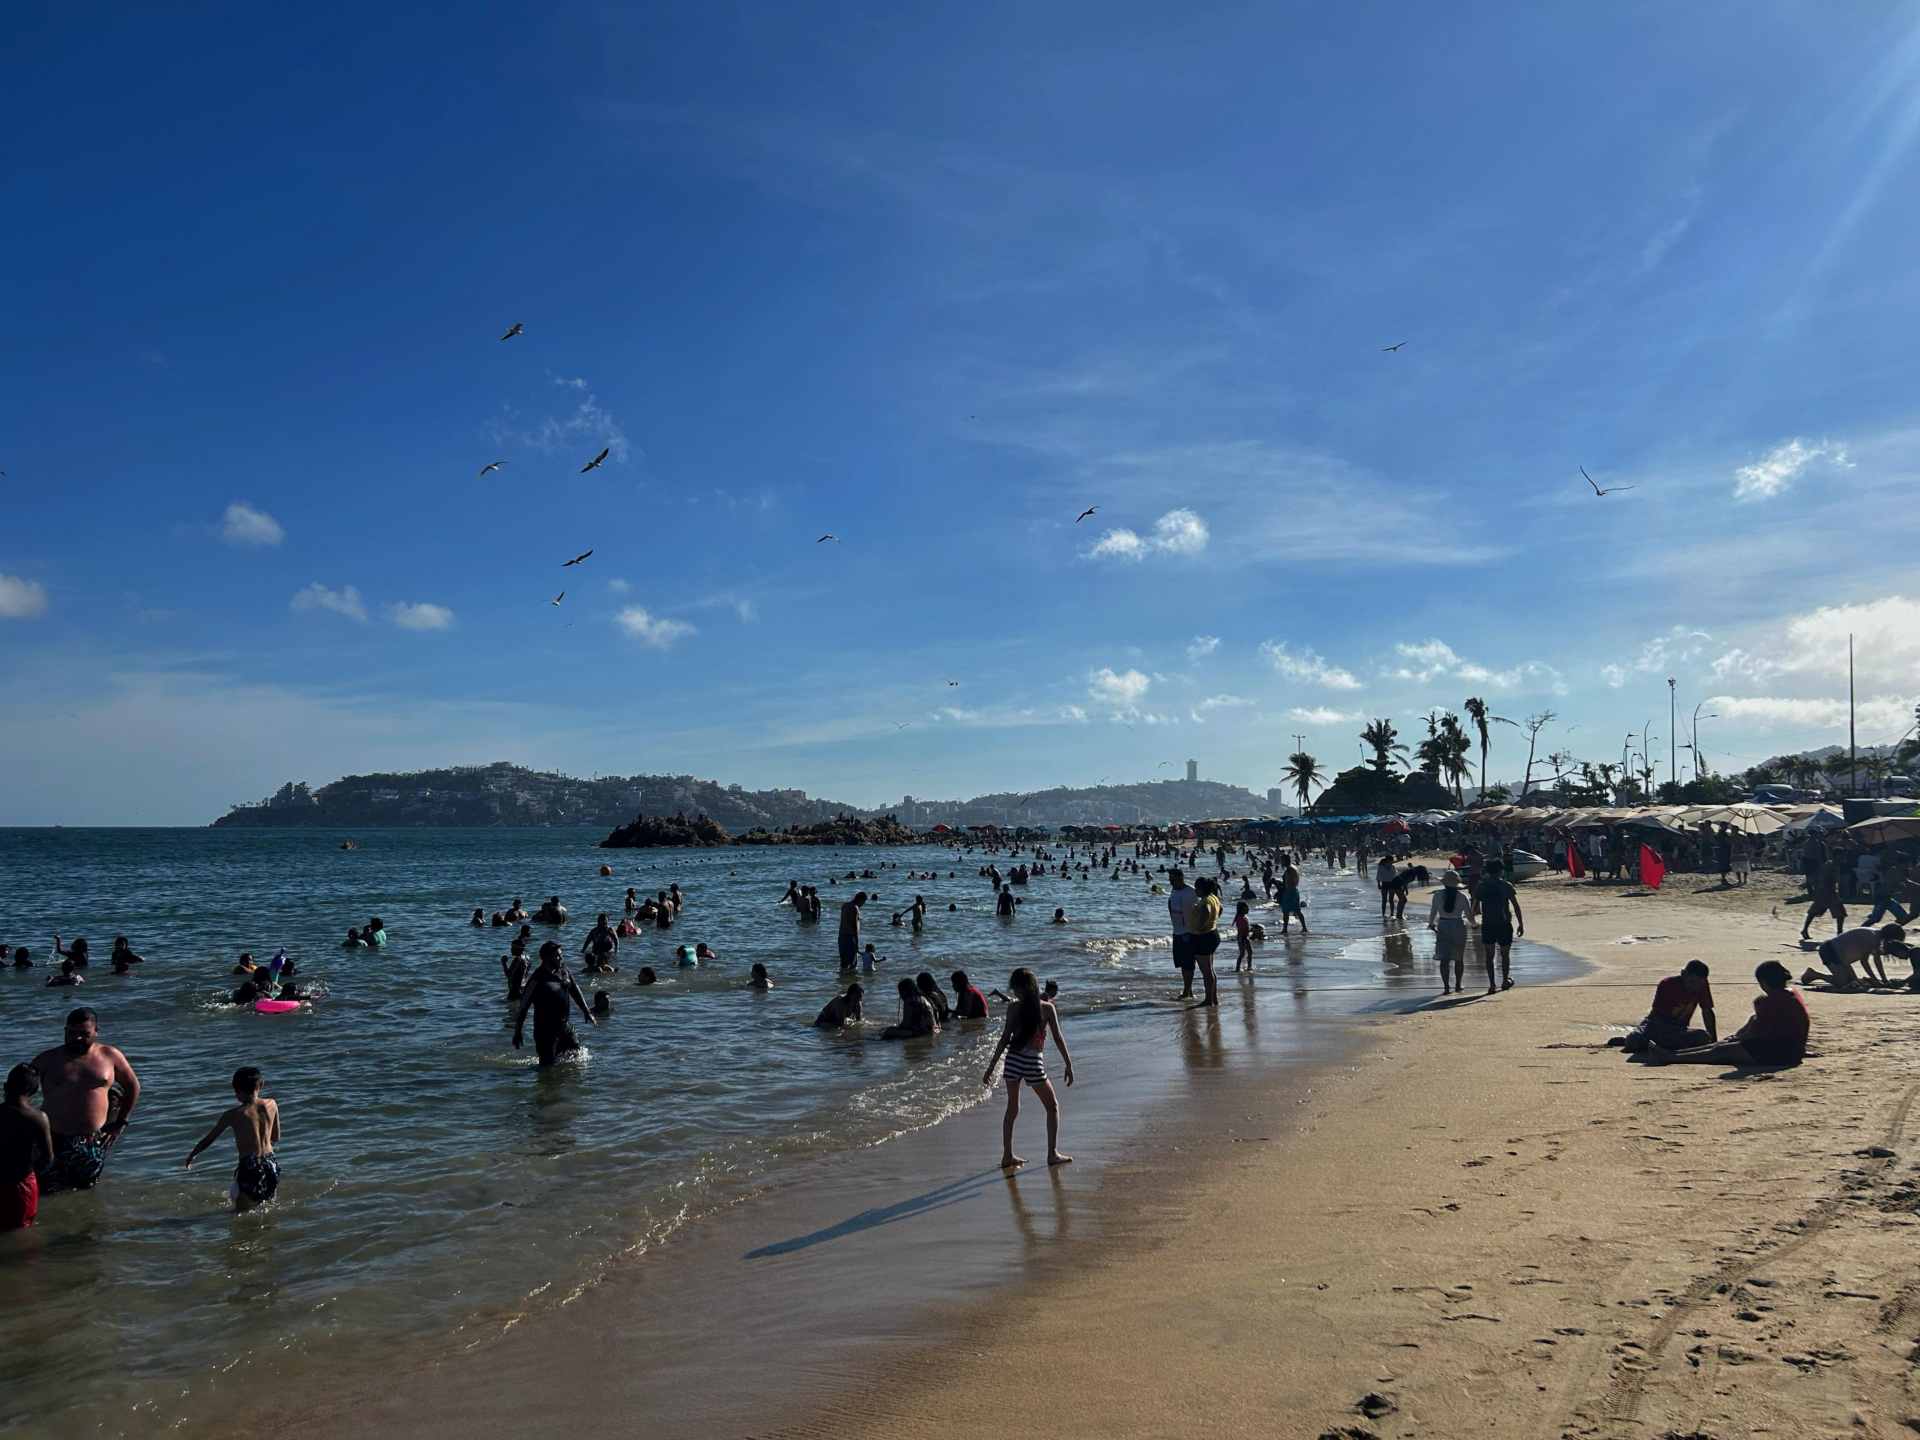 “La playa lo mejor de Acapulco”: Turistas de Semana Santa